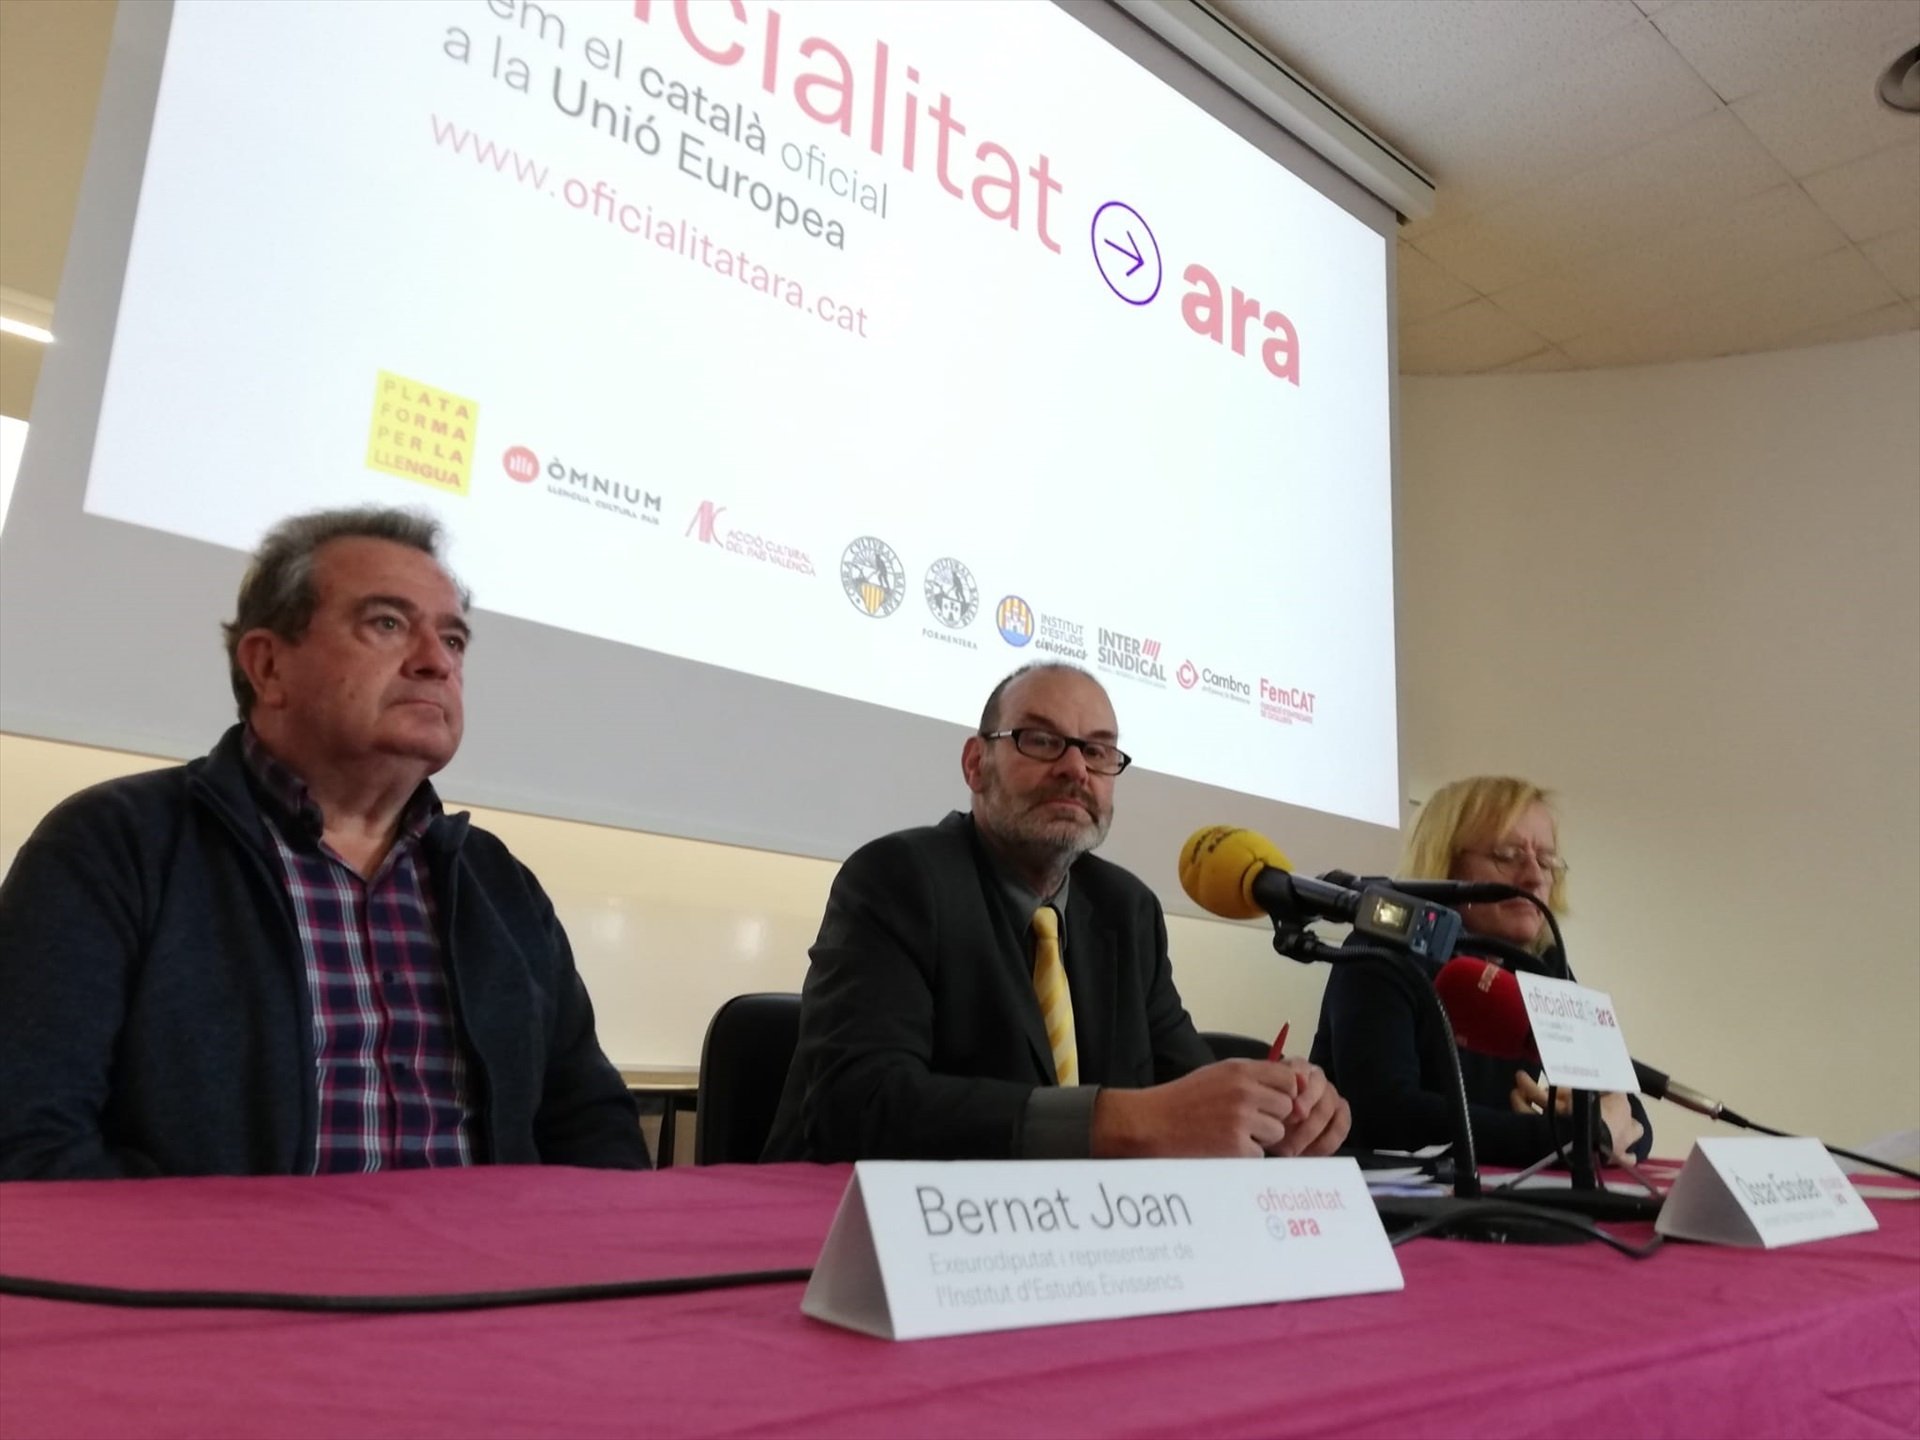 Impulsan un manifiesto para hacer al catalán oficial en la UE: "Somos la mayor anomalía de Europa"